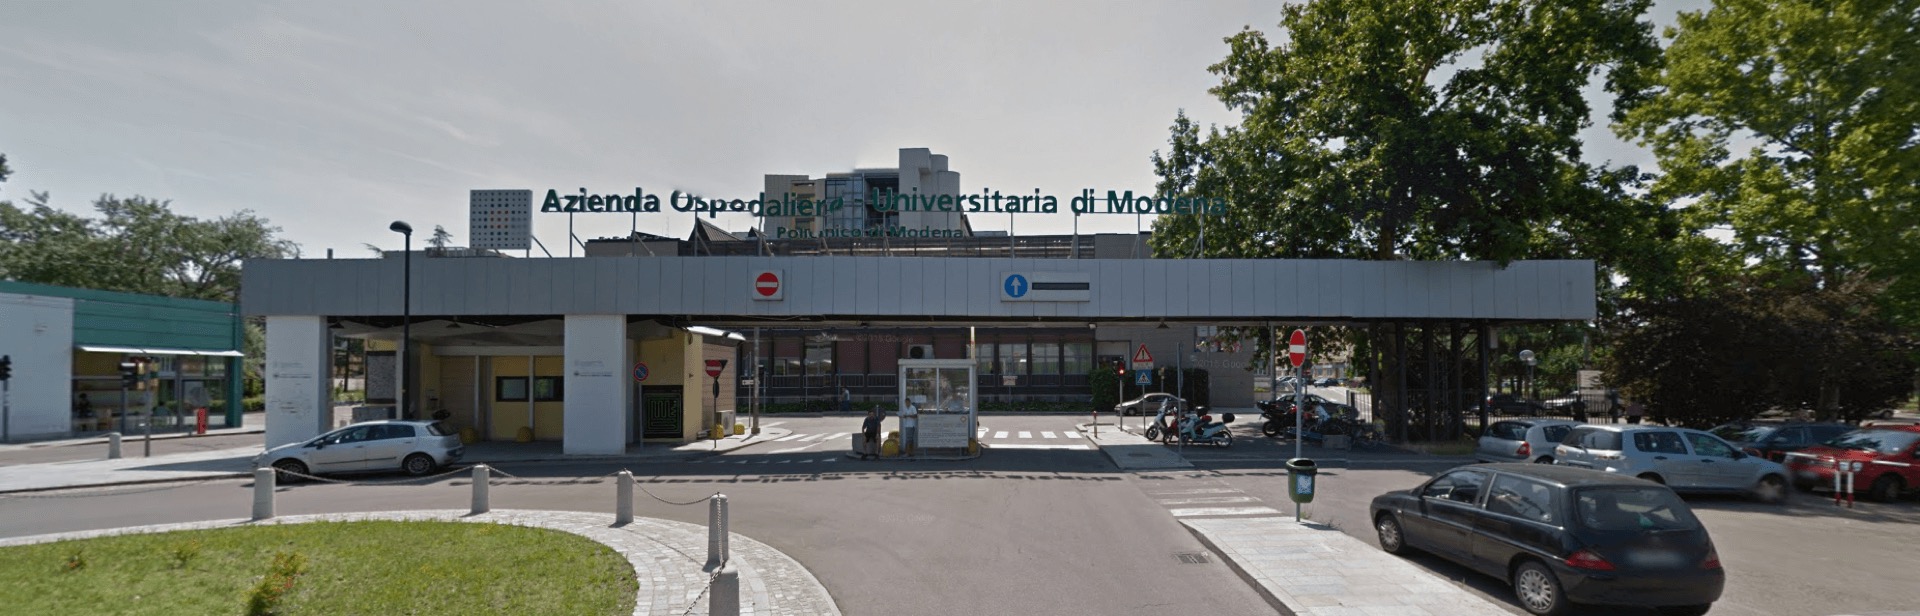  Cortonavirus / a Modena 5 ricoveri, tre morti e 445 nuovi contagi